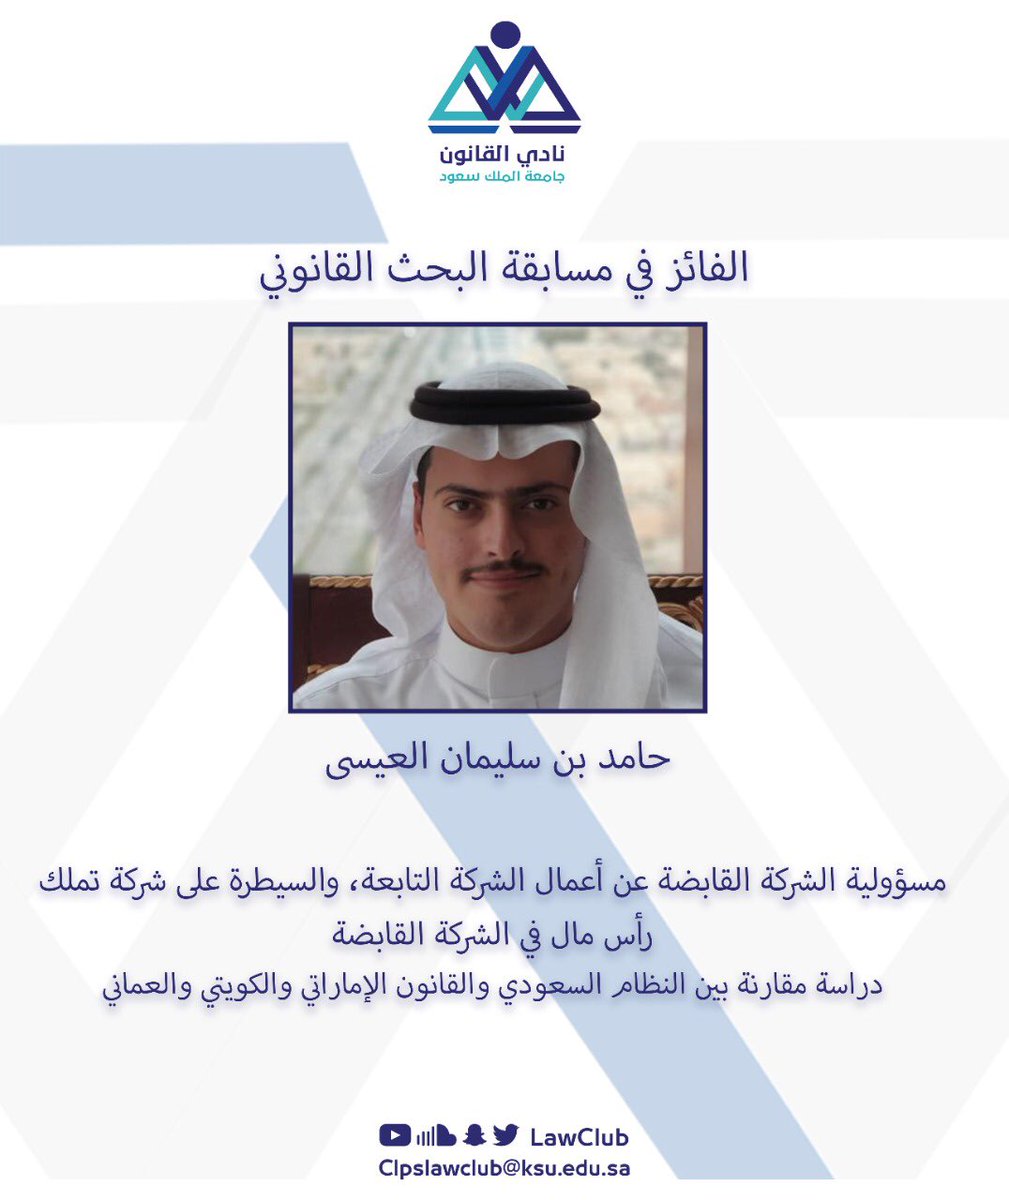 تخصص القانون جامعة الملك سعود